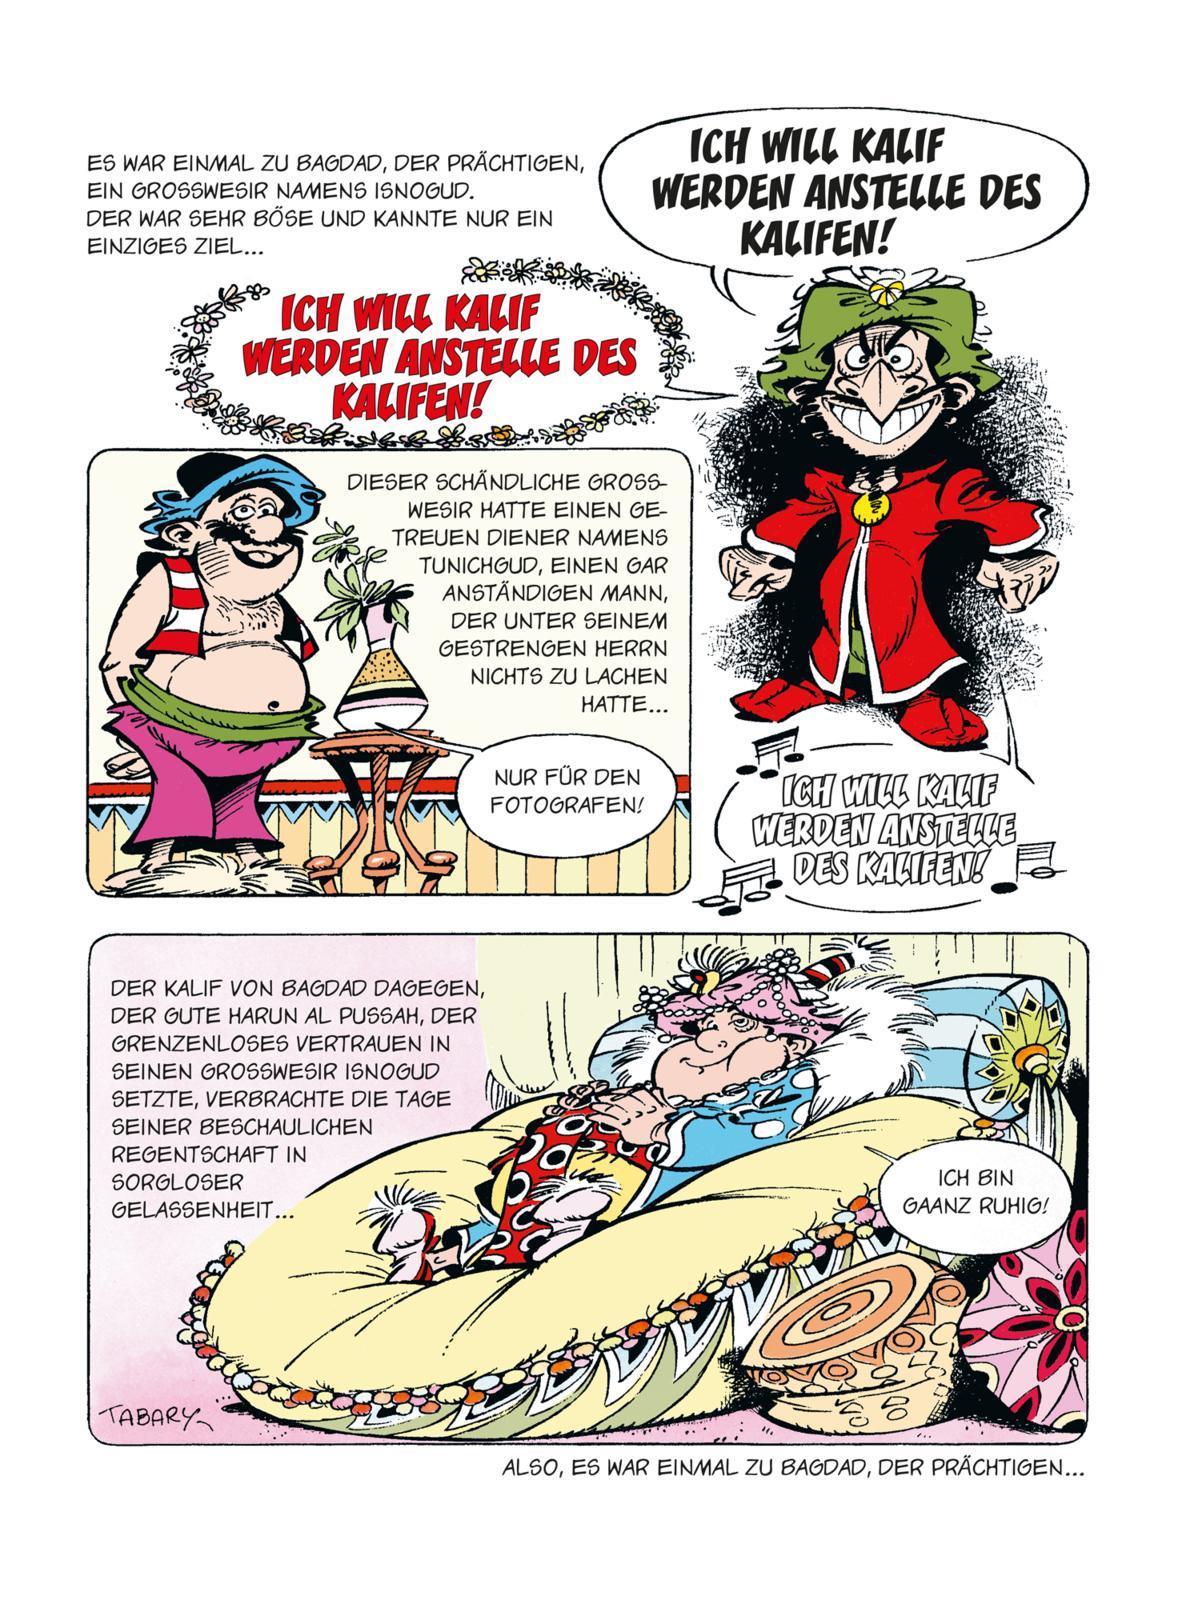 Isnogud Collection Asterix-Autor René Goscinnys beste Comics in vier edlen Sammelbänden Die Goscinny-Jahre Hardcover-Schuber 